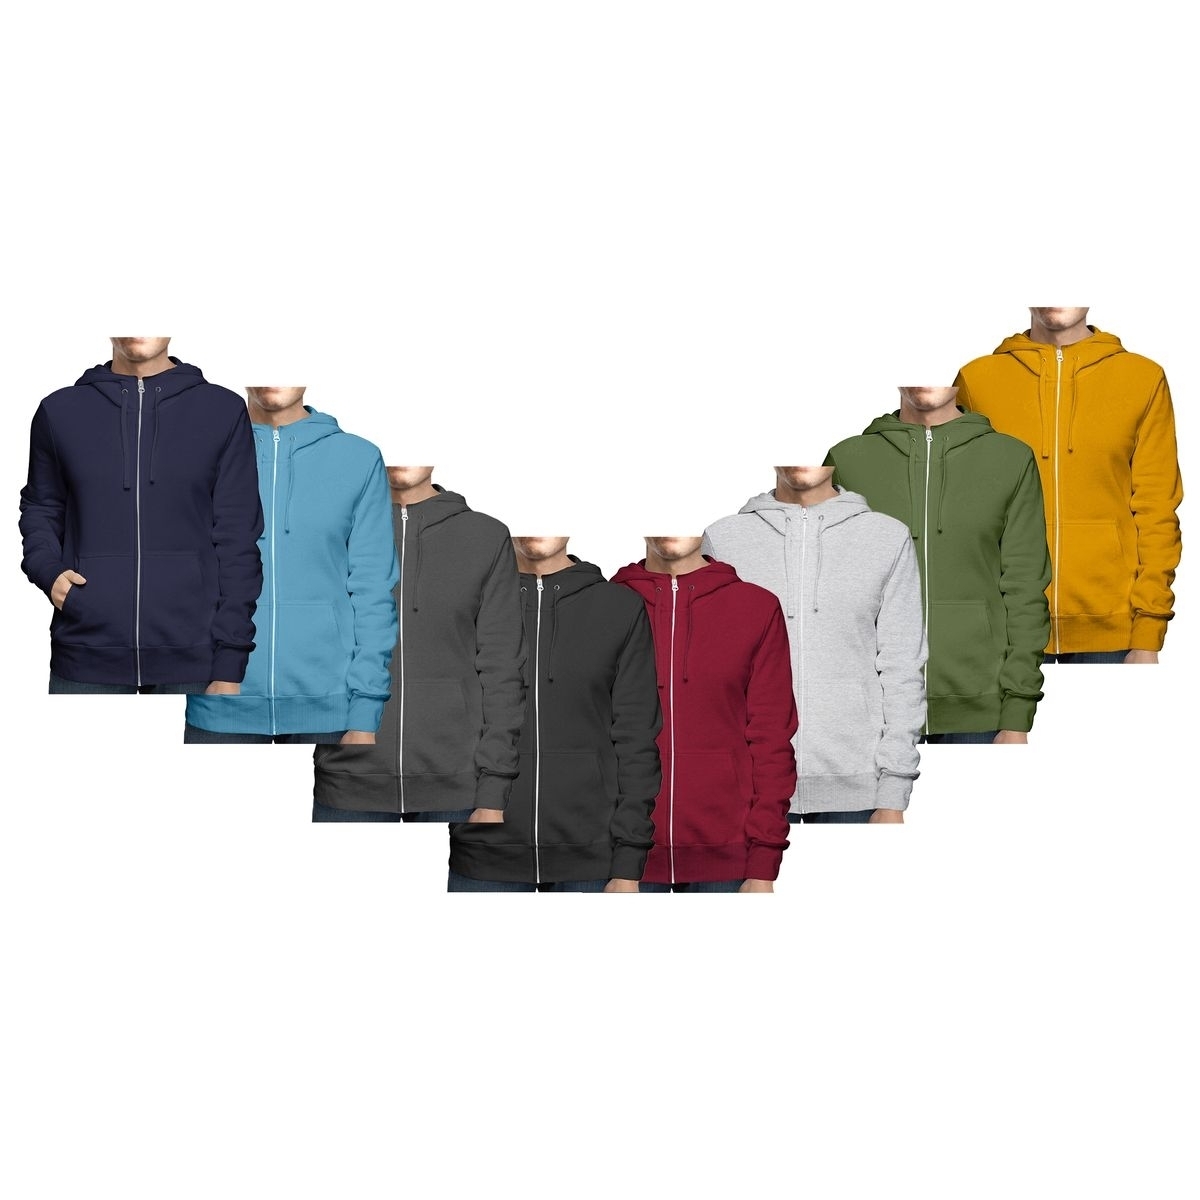 Men's Winter Warm Cozy Full Zip-Up Fleece Lined Soft Hoodie Sweatshirt - Charcoal, Large